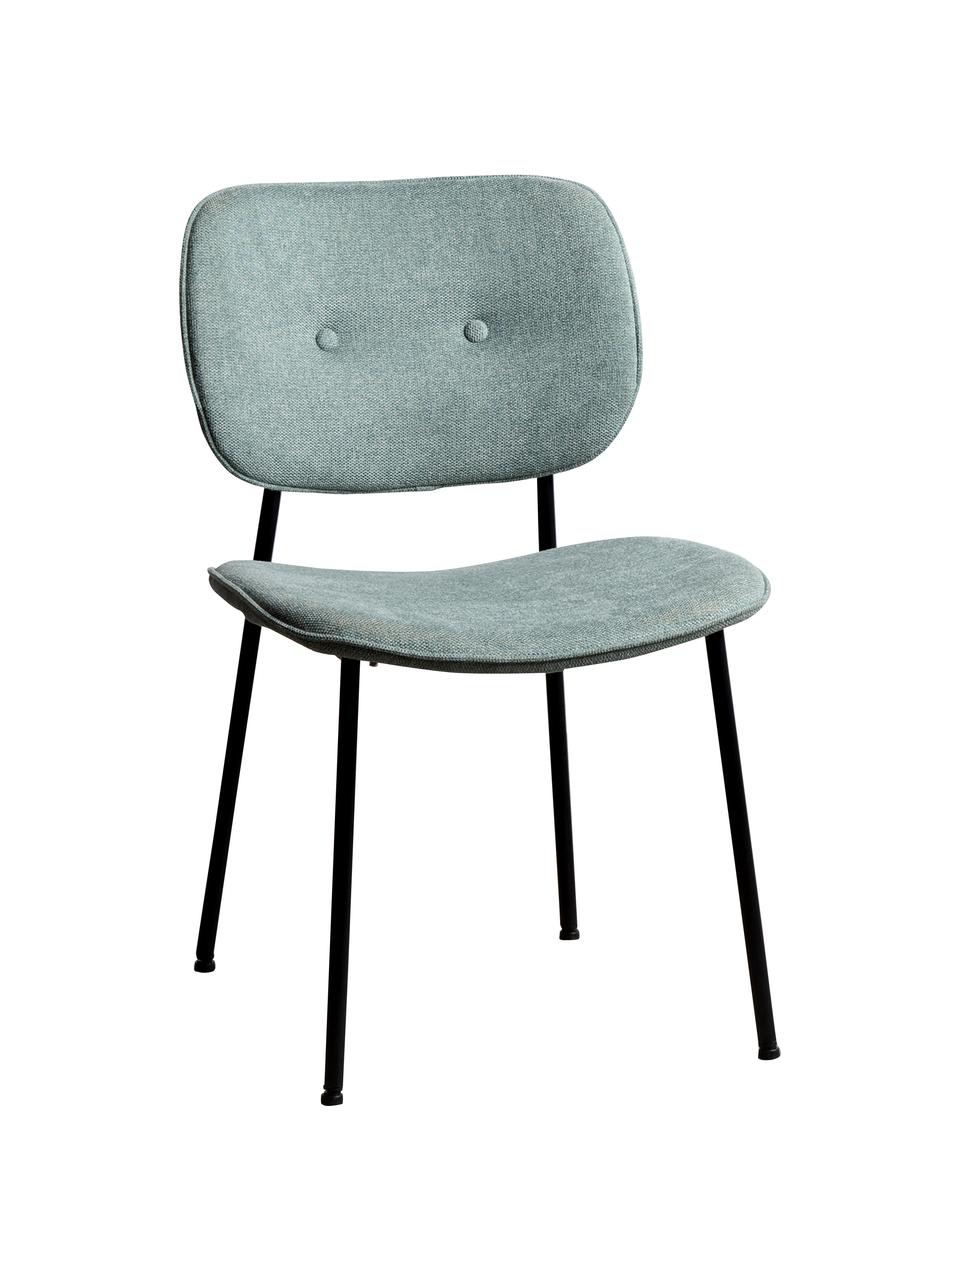 Čalouněná židle Oprah, Tyrkysová, černá, Š 56 cm, H 52 cm